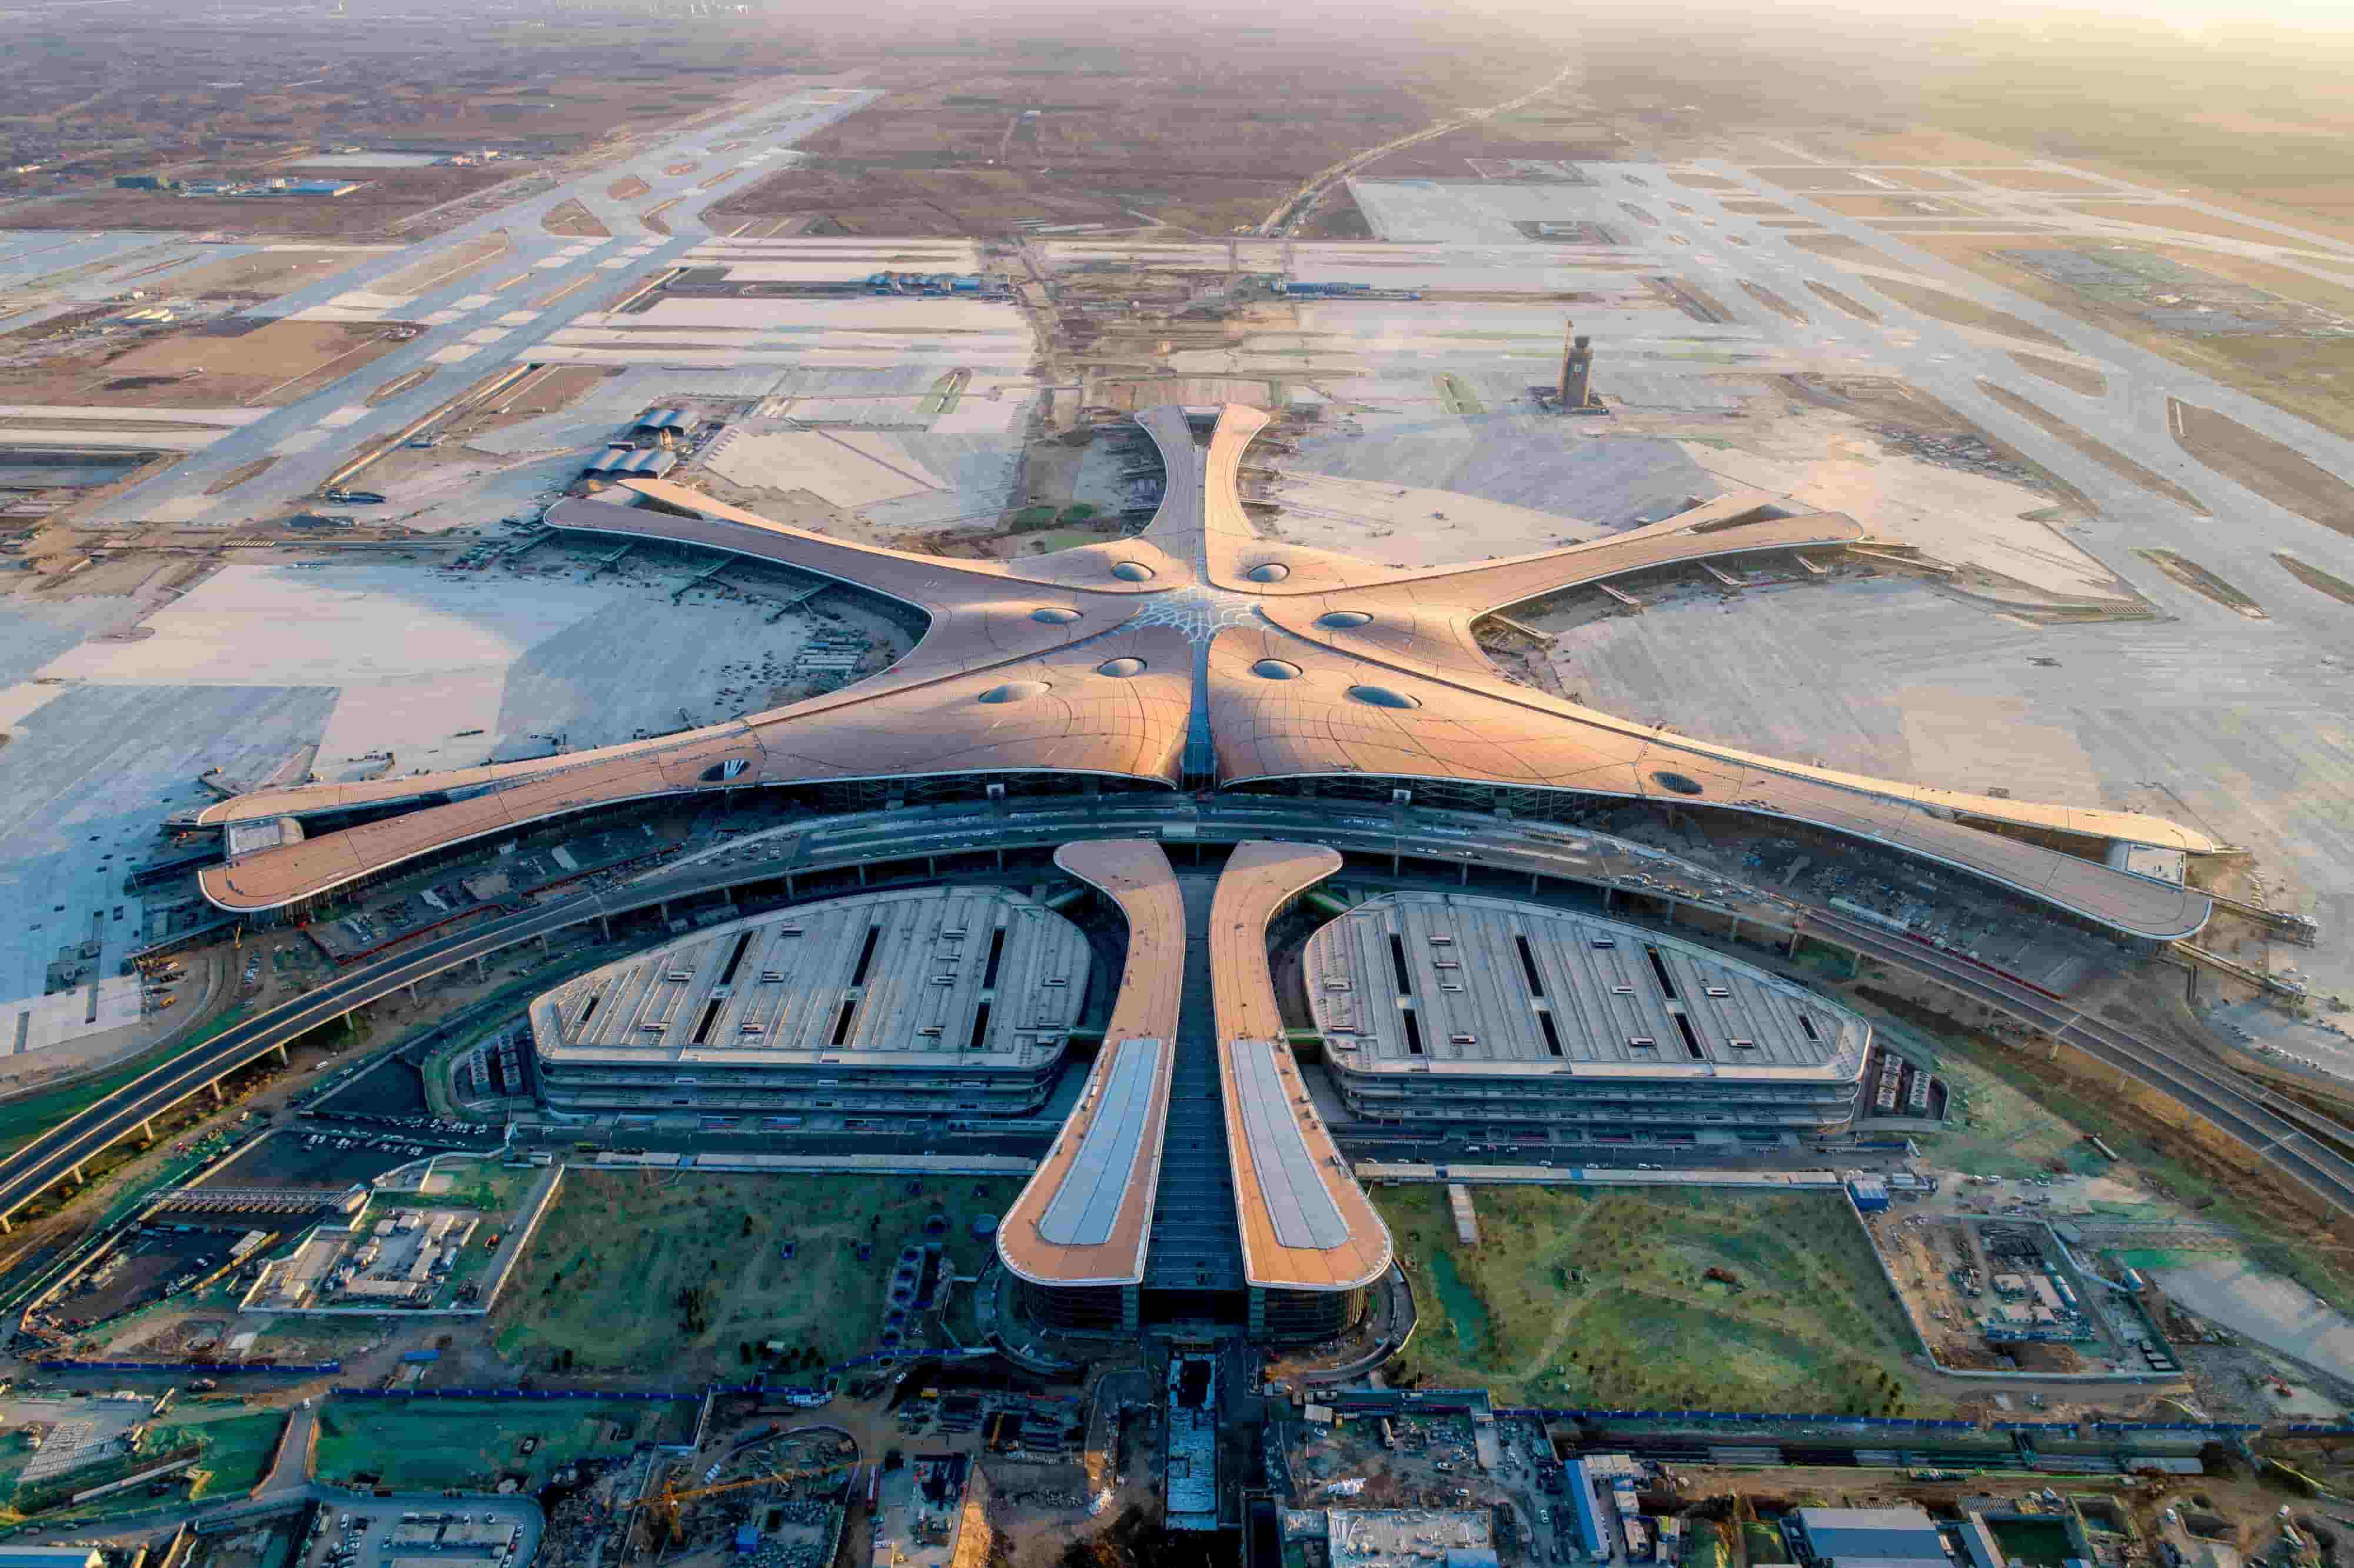 Beijing Daxing International Airport, Beijing